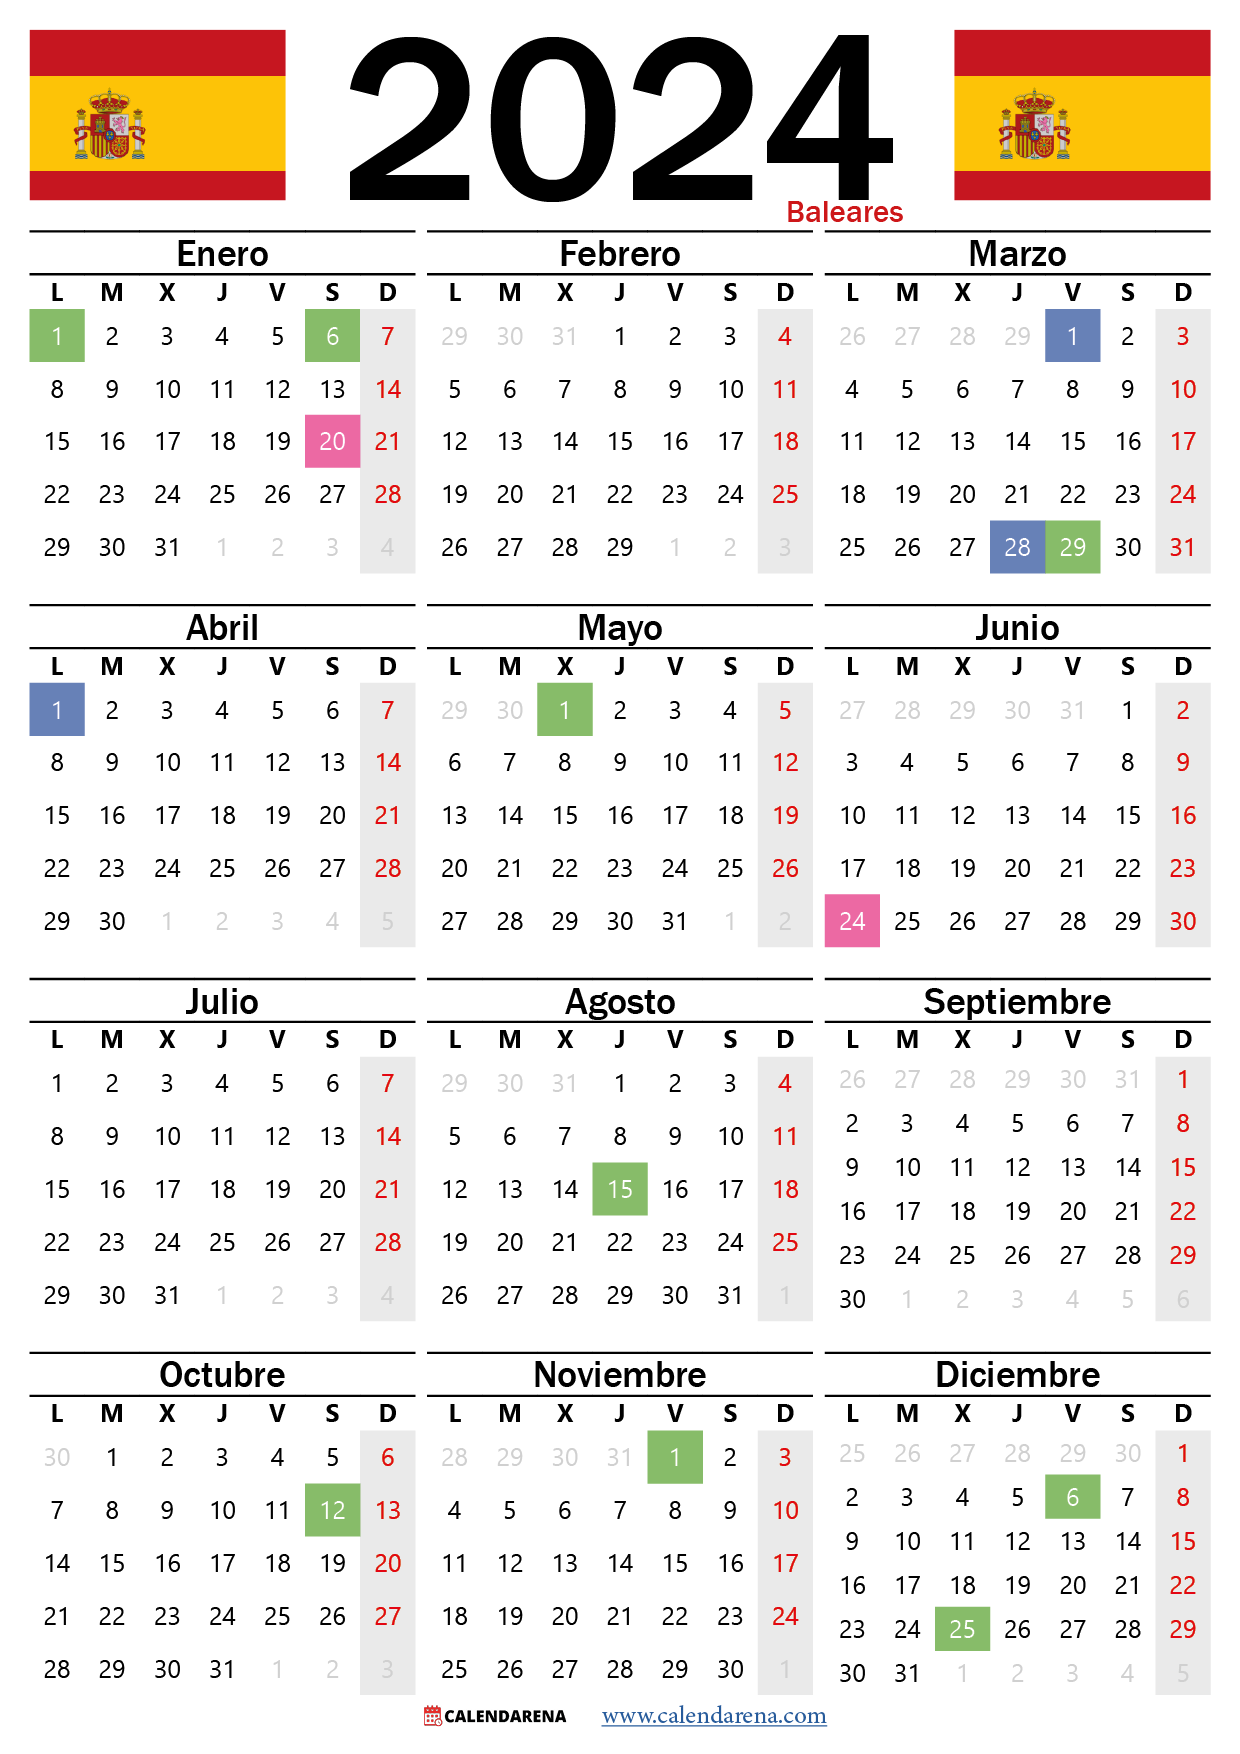 Calendario Laboral Baleares 2024